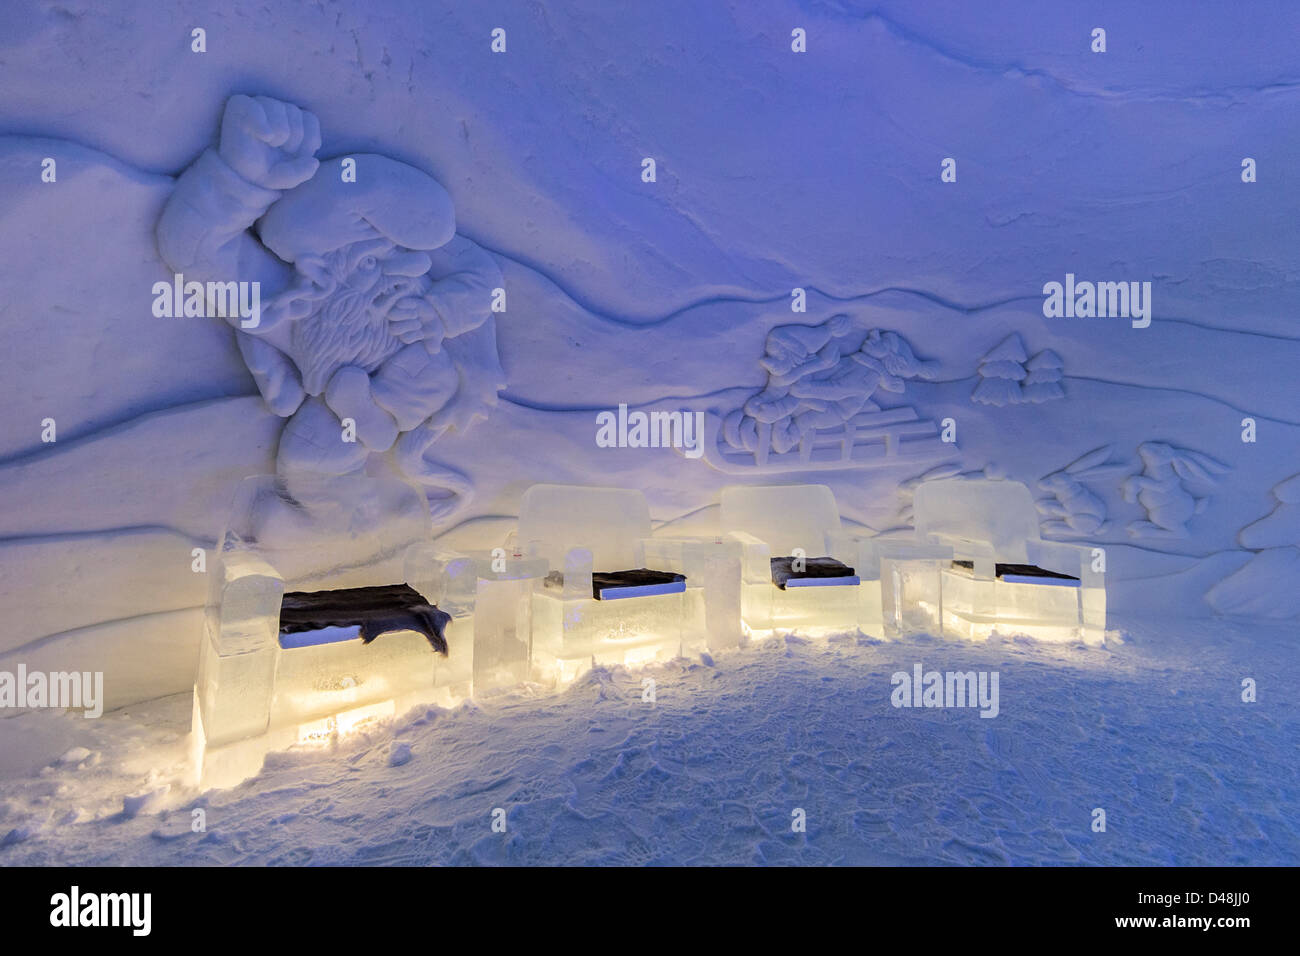 Interno del Kirkenes Snowhotel, Norvegia, mostra di mobili realizzati da sculture di neve e ghiaccio sulla parete Foto Stock